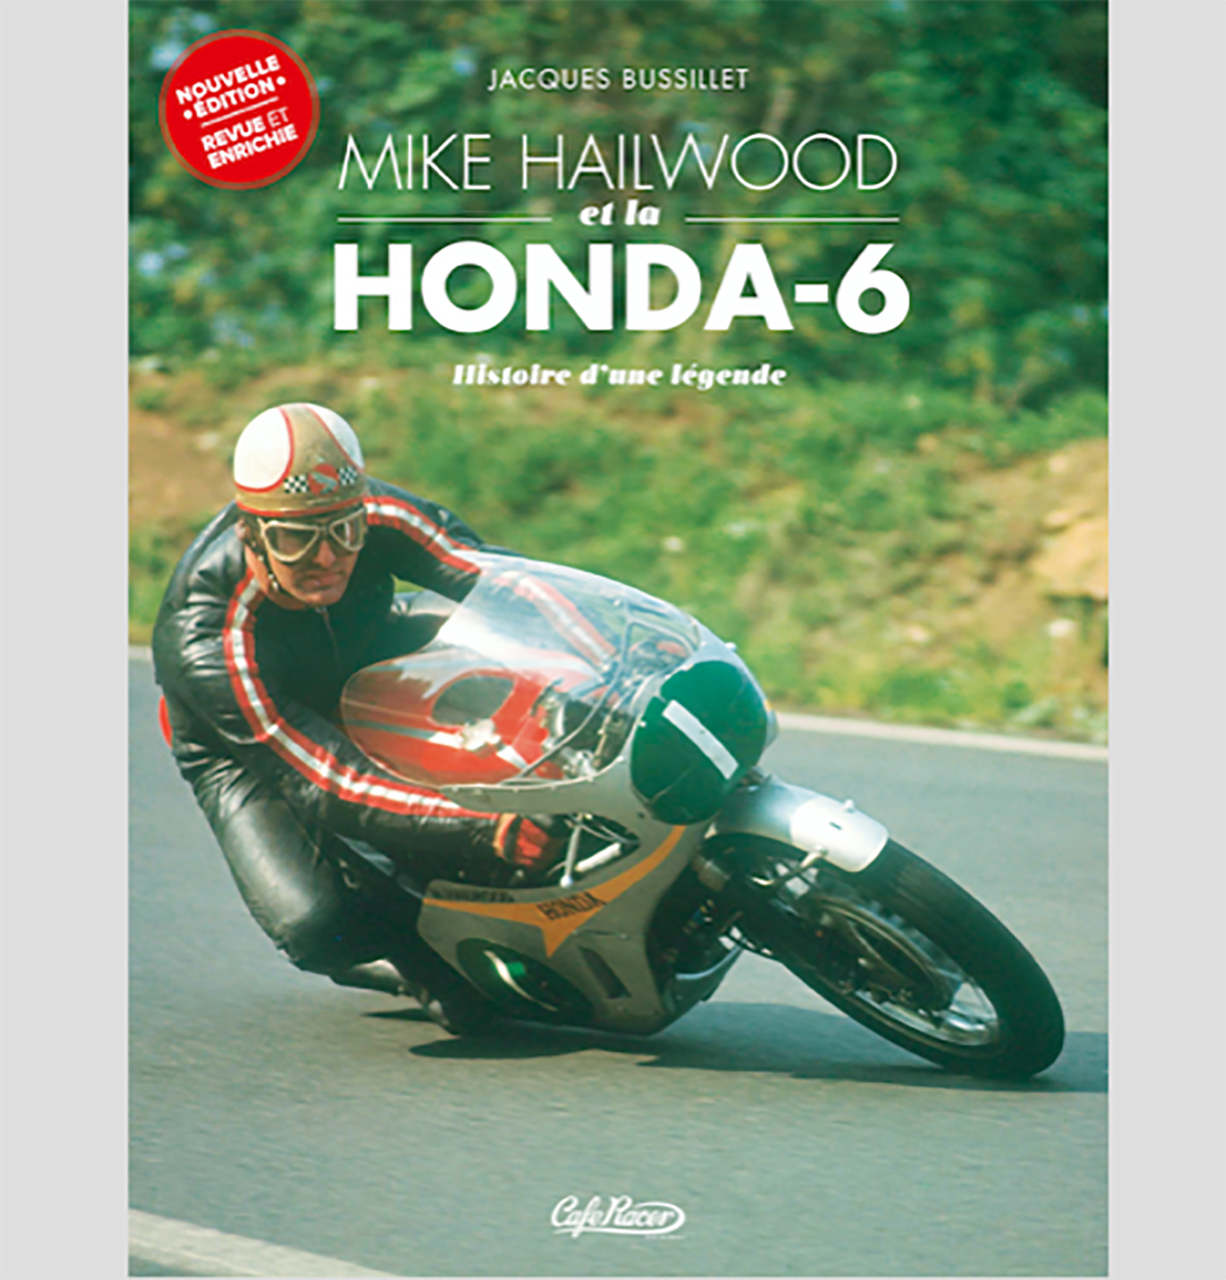 Mike Hailwood et la Honda – 6 Histoire d’une légende